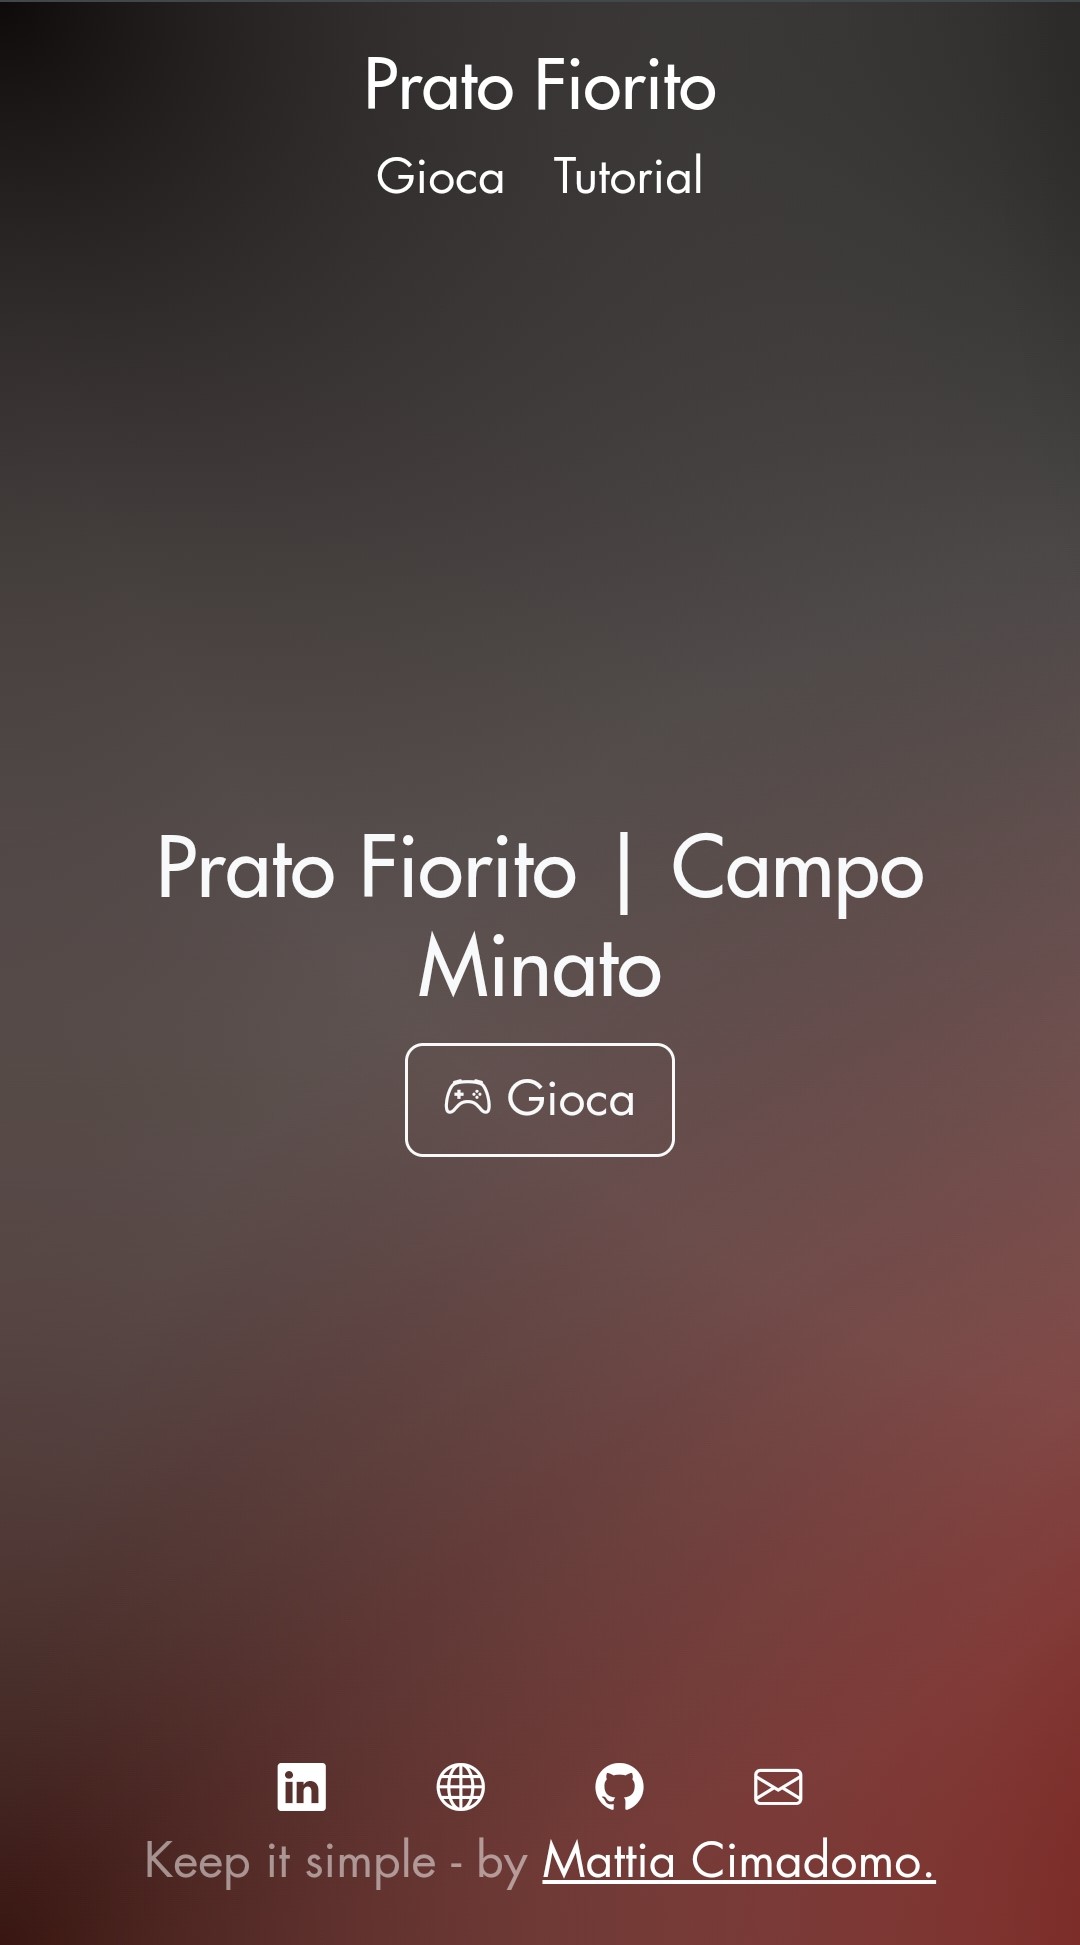 Imgae of Prato Fiorito's website